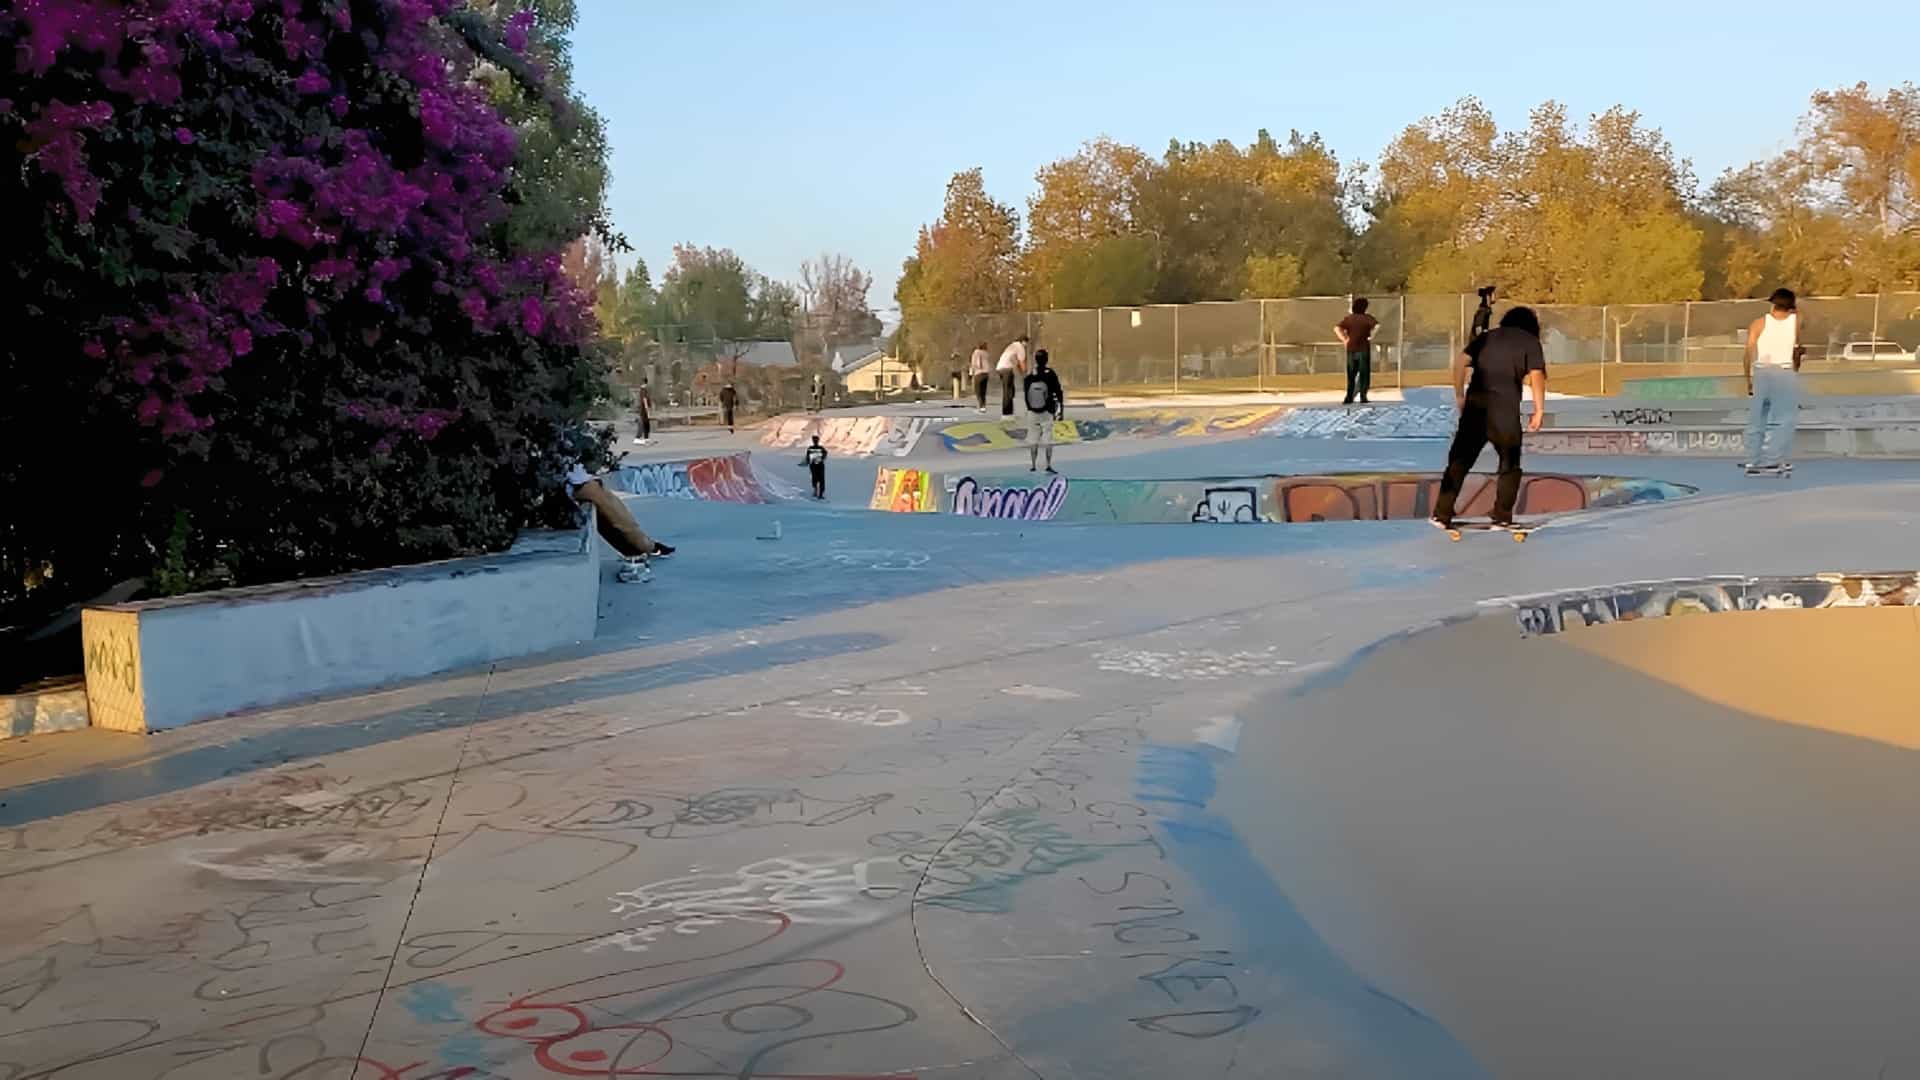 Pedlow Field Skate Park, Los Angeles